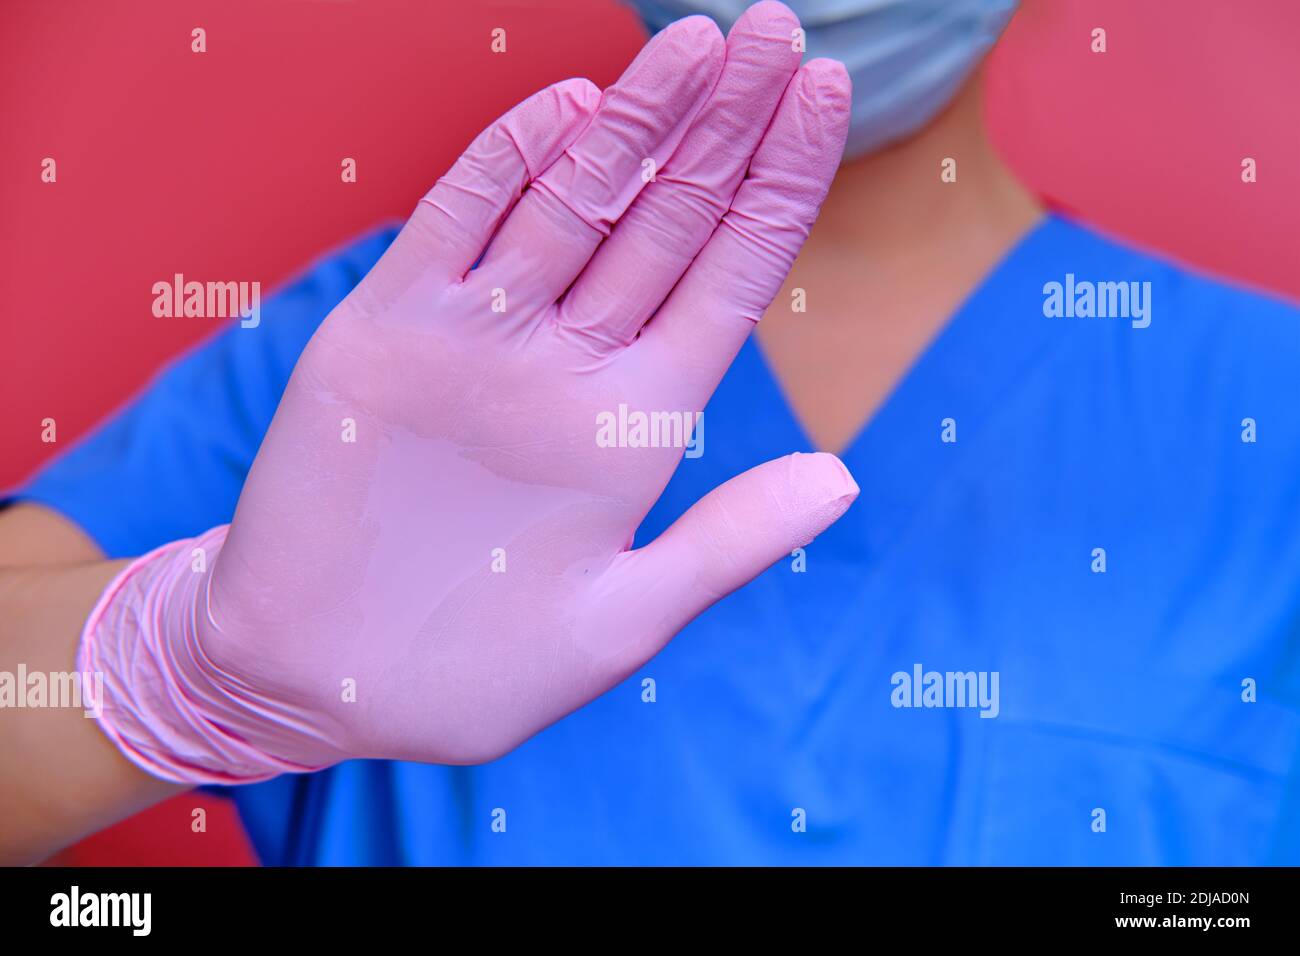 Der Arzt stoppt die Coronavirus-Krankheit mit einer Handbewegung, Nahaufnahme. Konzept der Gegenwirkung von Ärzten und Ärzten auf das Influenza-Virus epid Stockfoto